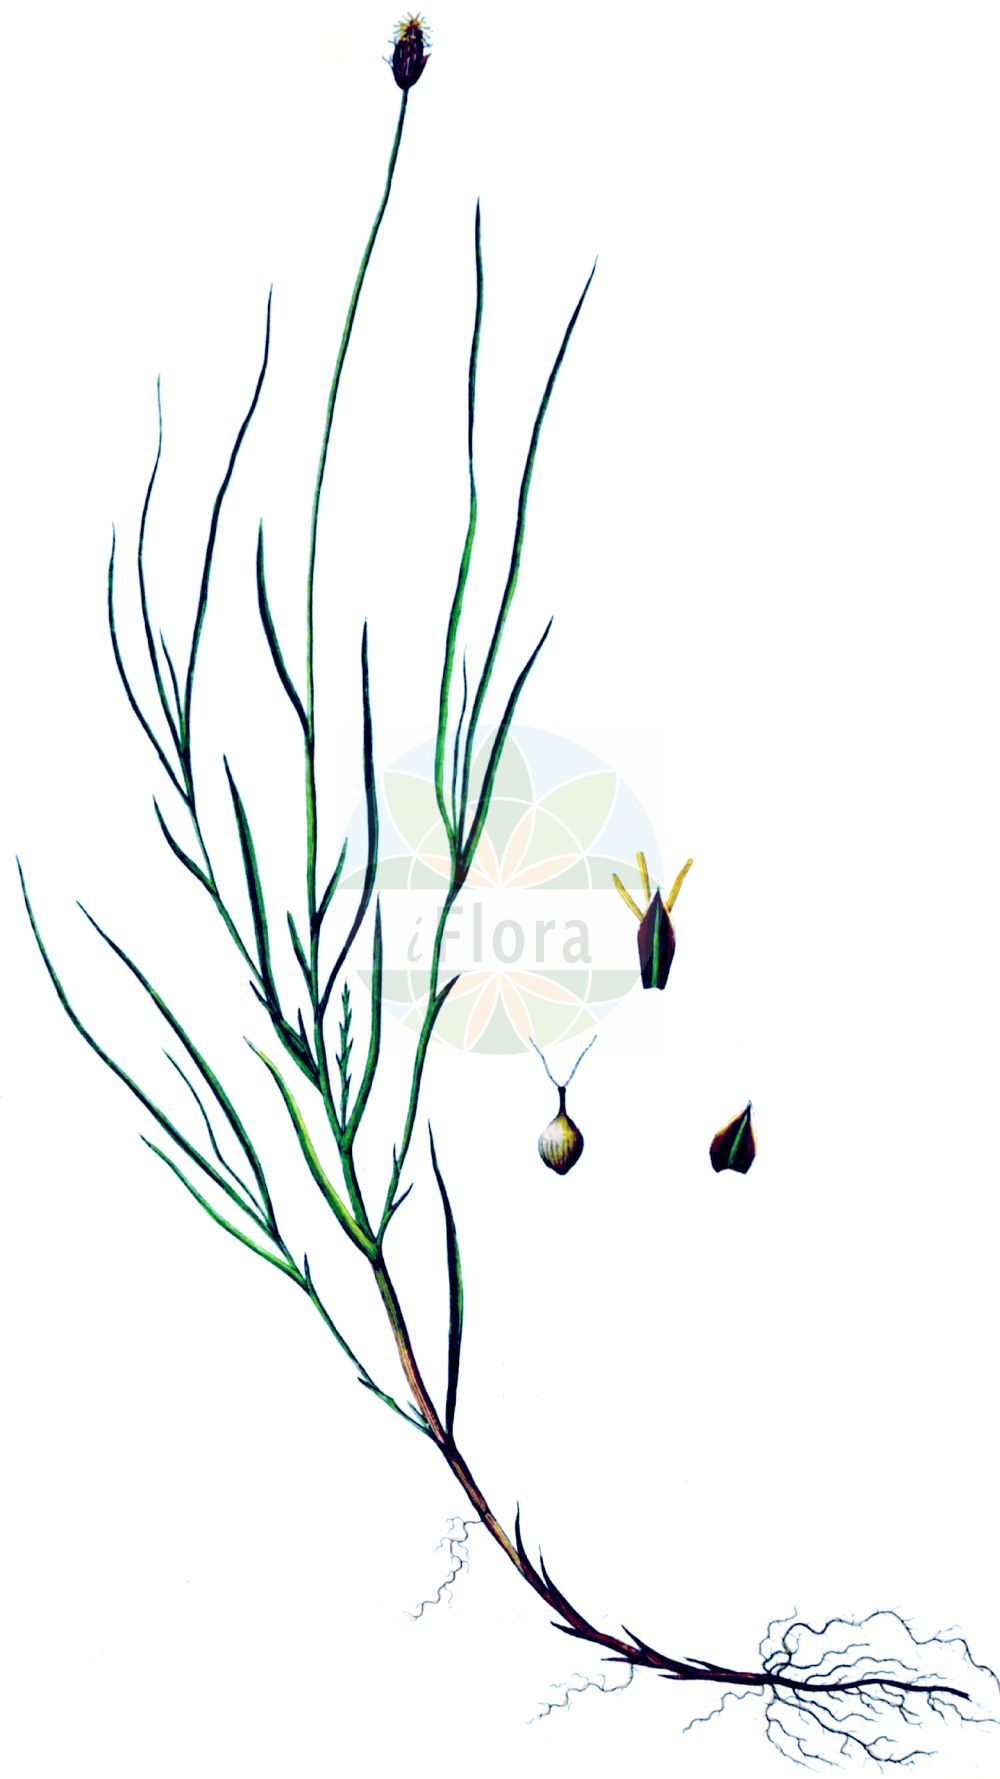 Historische Abbildung von Carex chordorrhiza (Fadenwurzelige Segge - String Sedge). Das Bild zeigt Blatt, Bluete, Frucht und Same. ---- Historical Drawing of Carex chordorrhiza (Fadenwurzelige Segge - String Sedge). The image is showing leaf, flower, fruit and seed.(Carex chordorrhiza,Fadenwurzelige Segge,String Sedge,Carex chordorrhiza,Vignea chordorrhiza,Fadenwurzelige Segge,Fadenwurzel-Segge,Ranken-Segge,Strickwurzel-Segge,String Sedge,Creeping Sedge,Carex,Segge,Sedge,Cyperaceae,Sauergräser,Sedge family,Blatt,Bluete,Frucht,Same,leaf,flower,fruit,seed,Oeder (1761-1883))